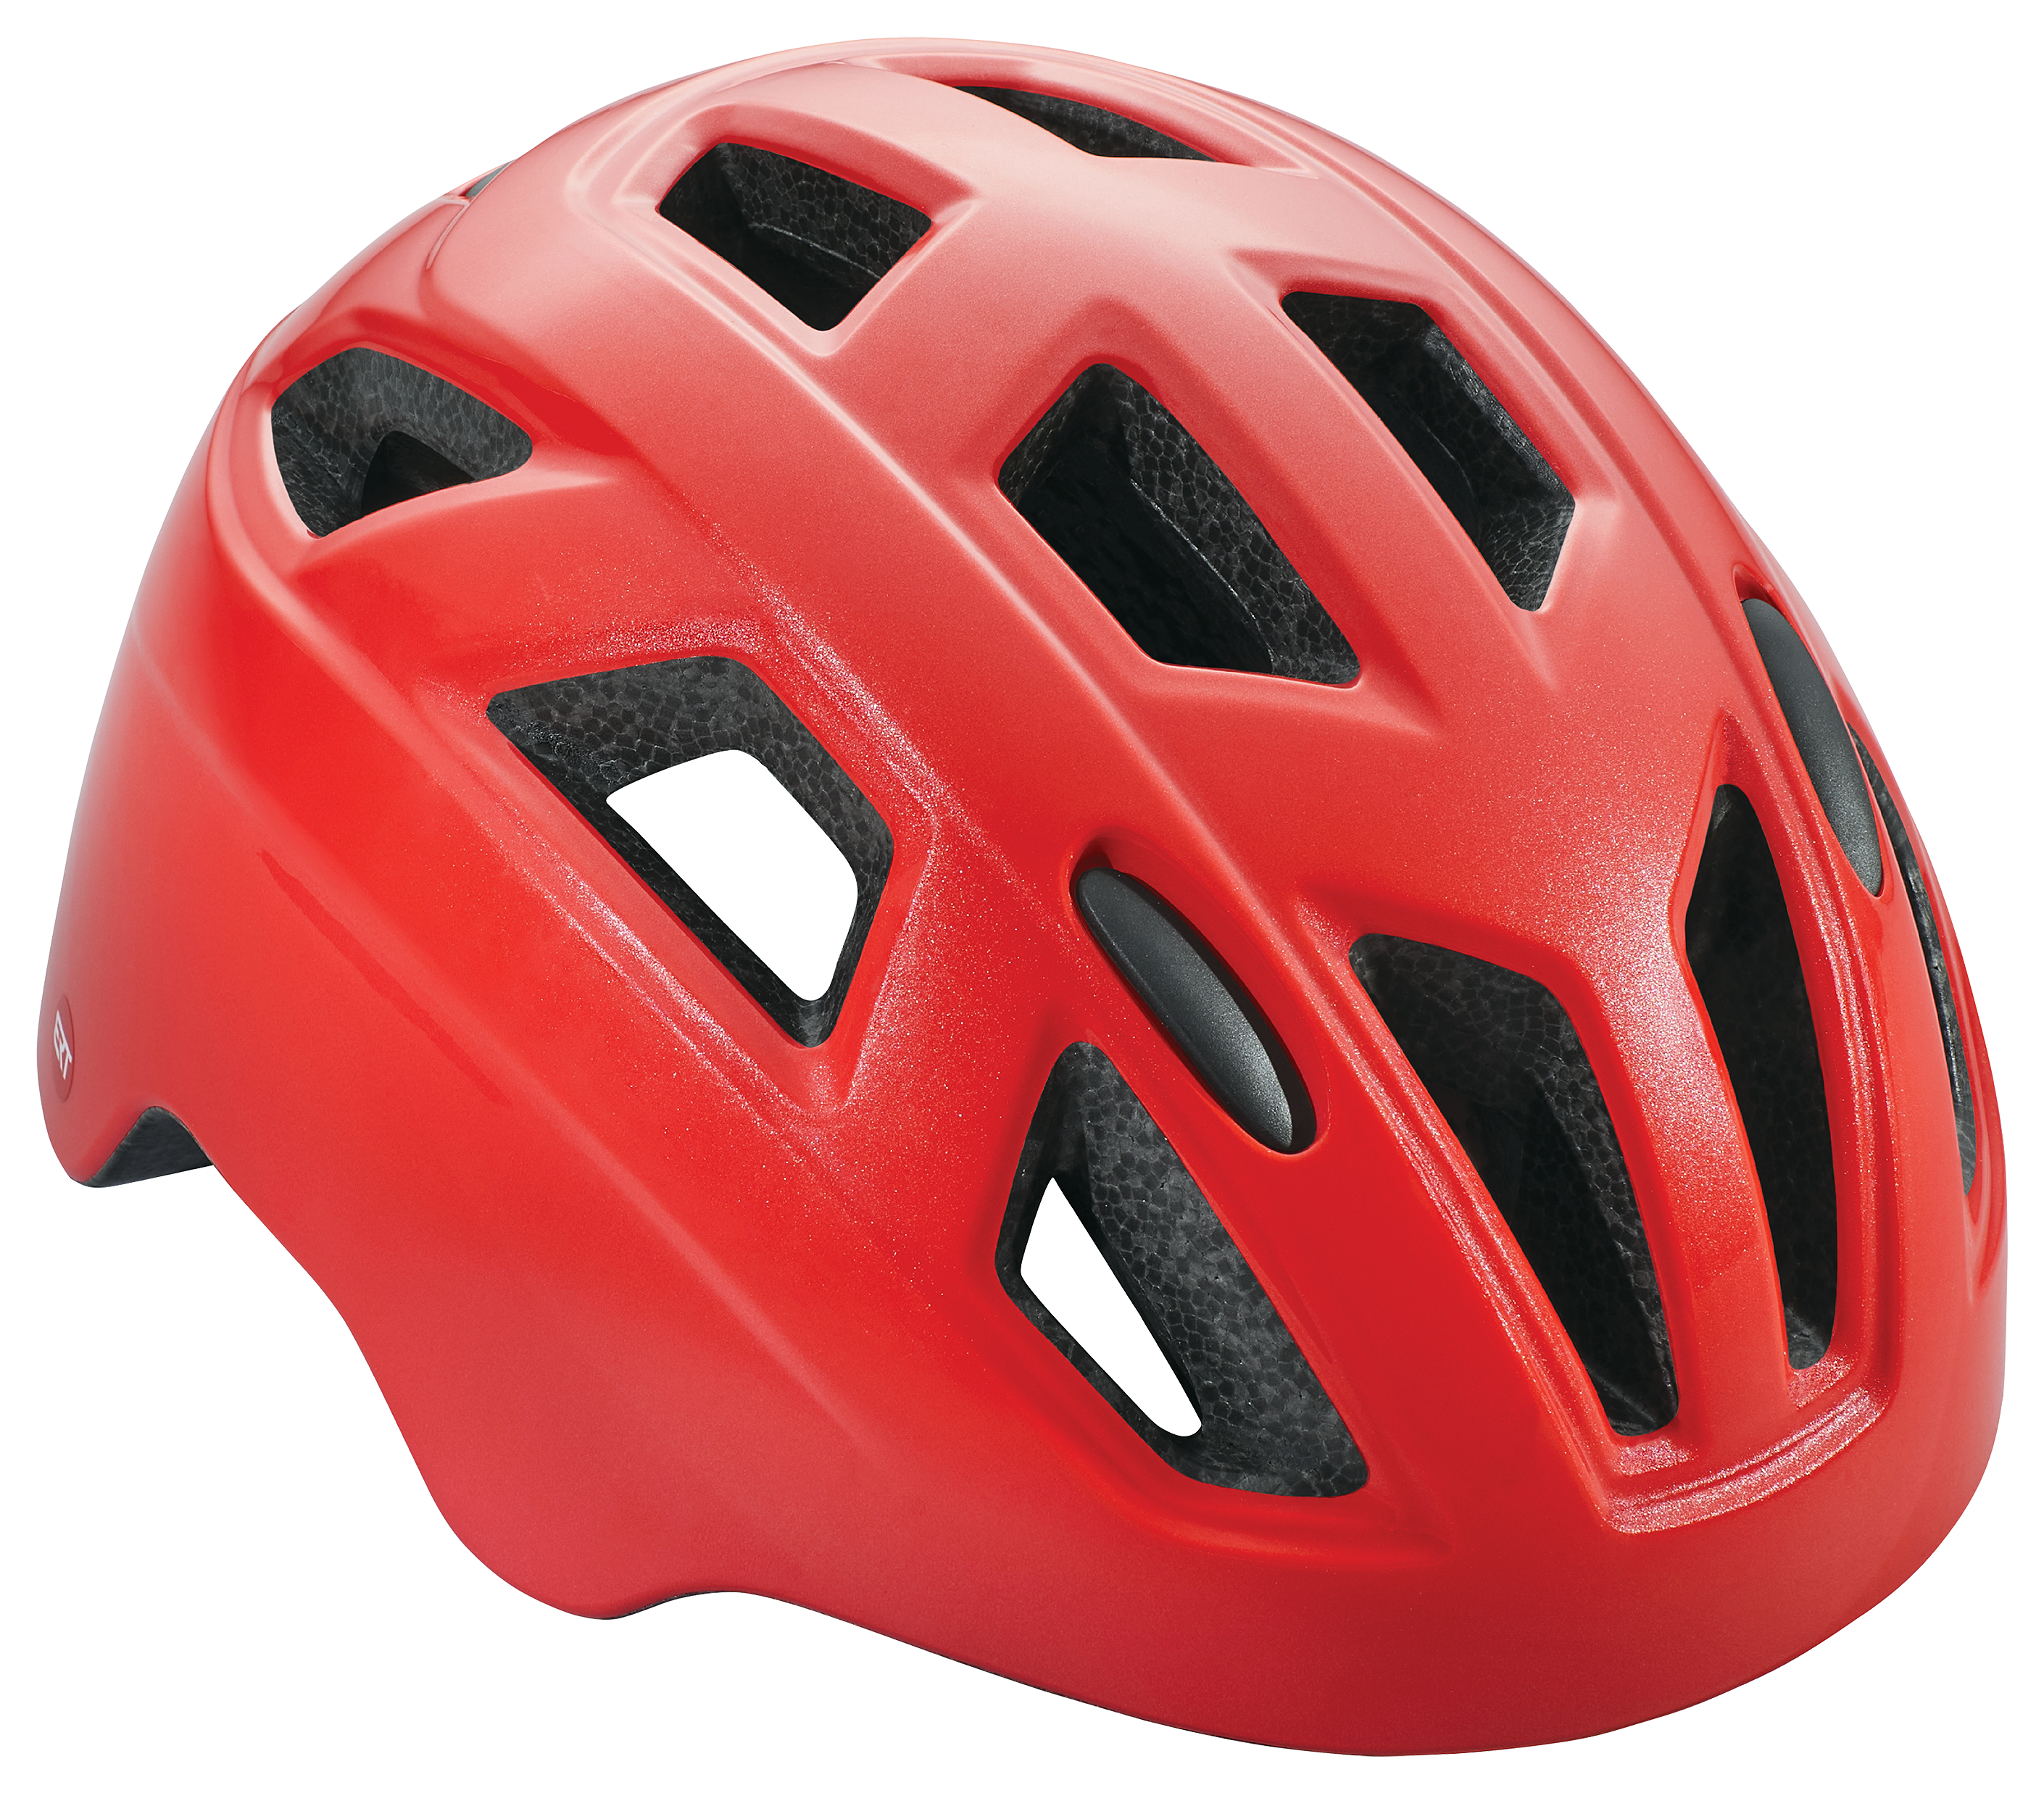 Schwinn Chroma ERT Bike Helmet for Kids - Red